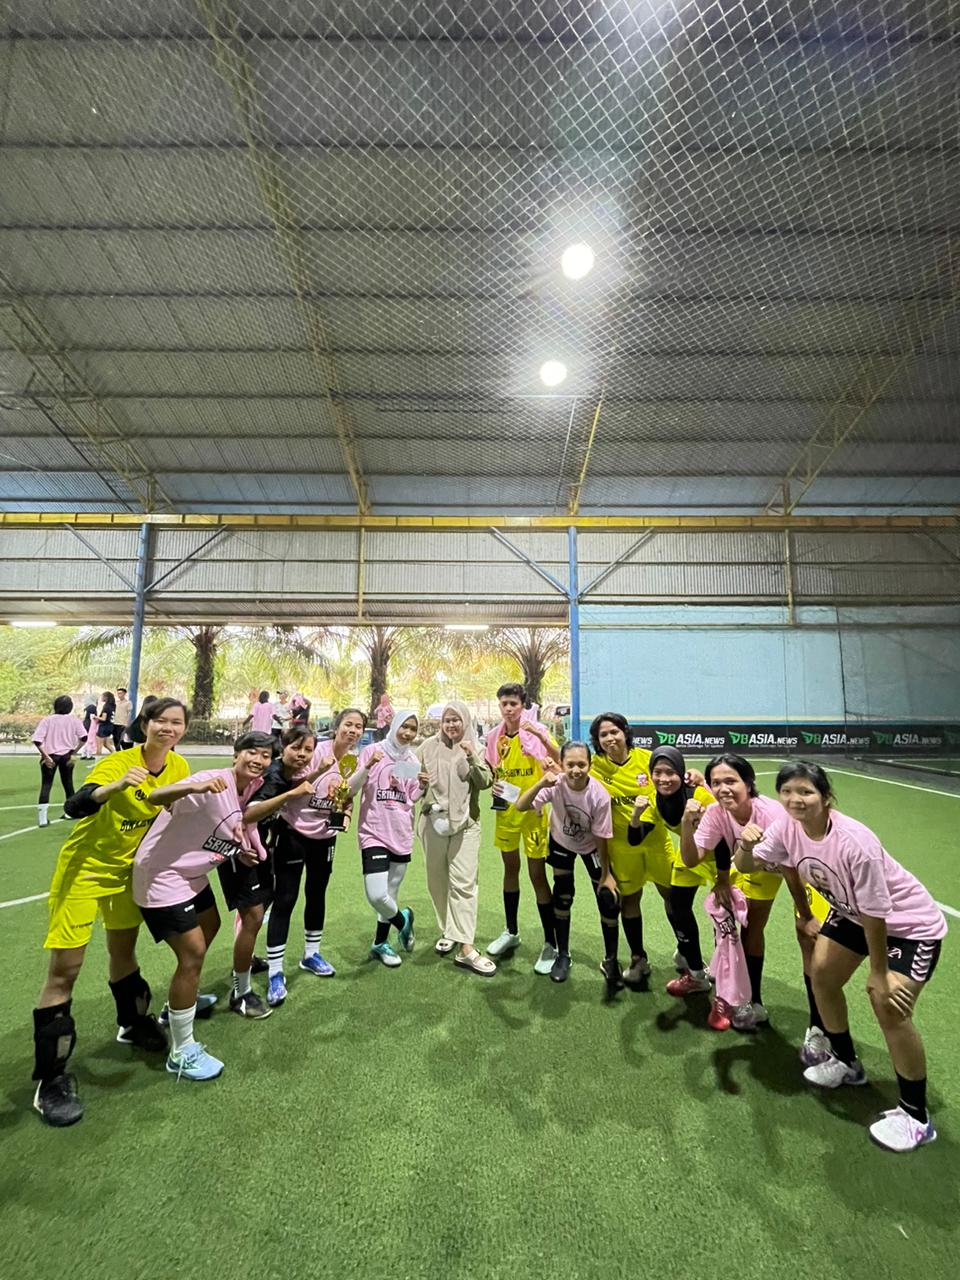 Keseruan Turnamen Fun Futsal Srikandi Ganjar Bersama Komunitas Perempuan di Sumsel